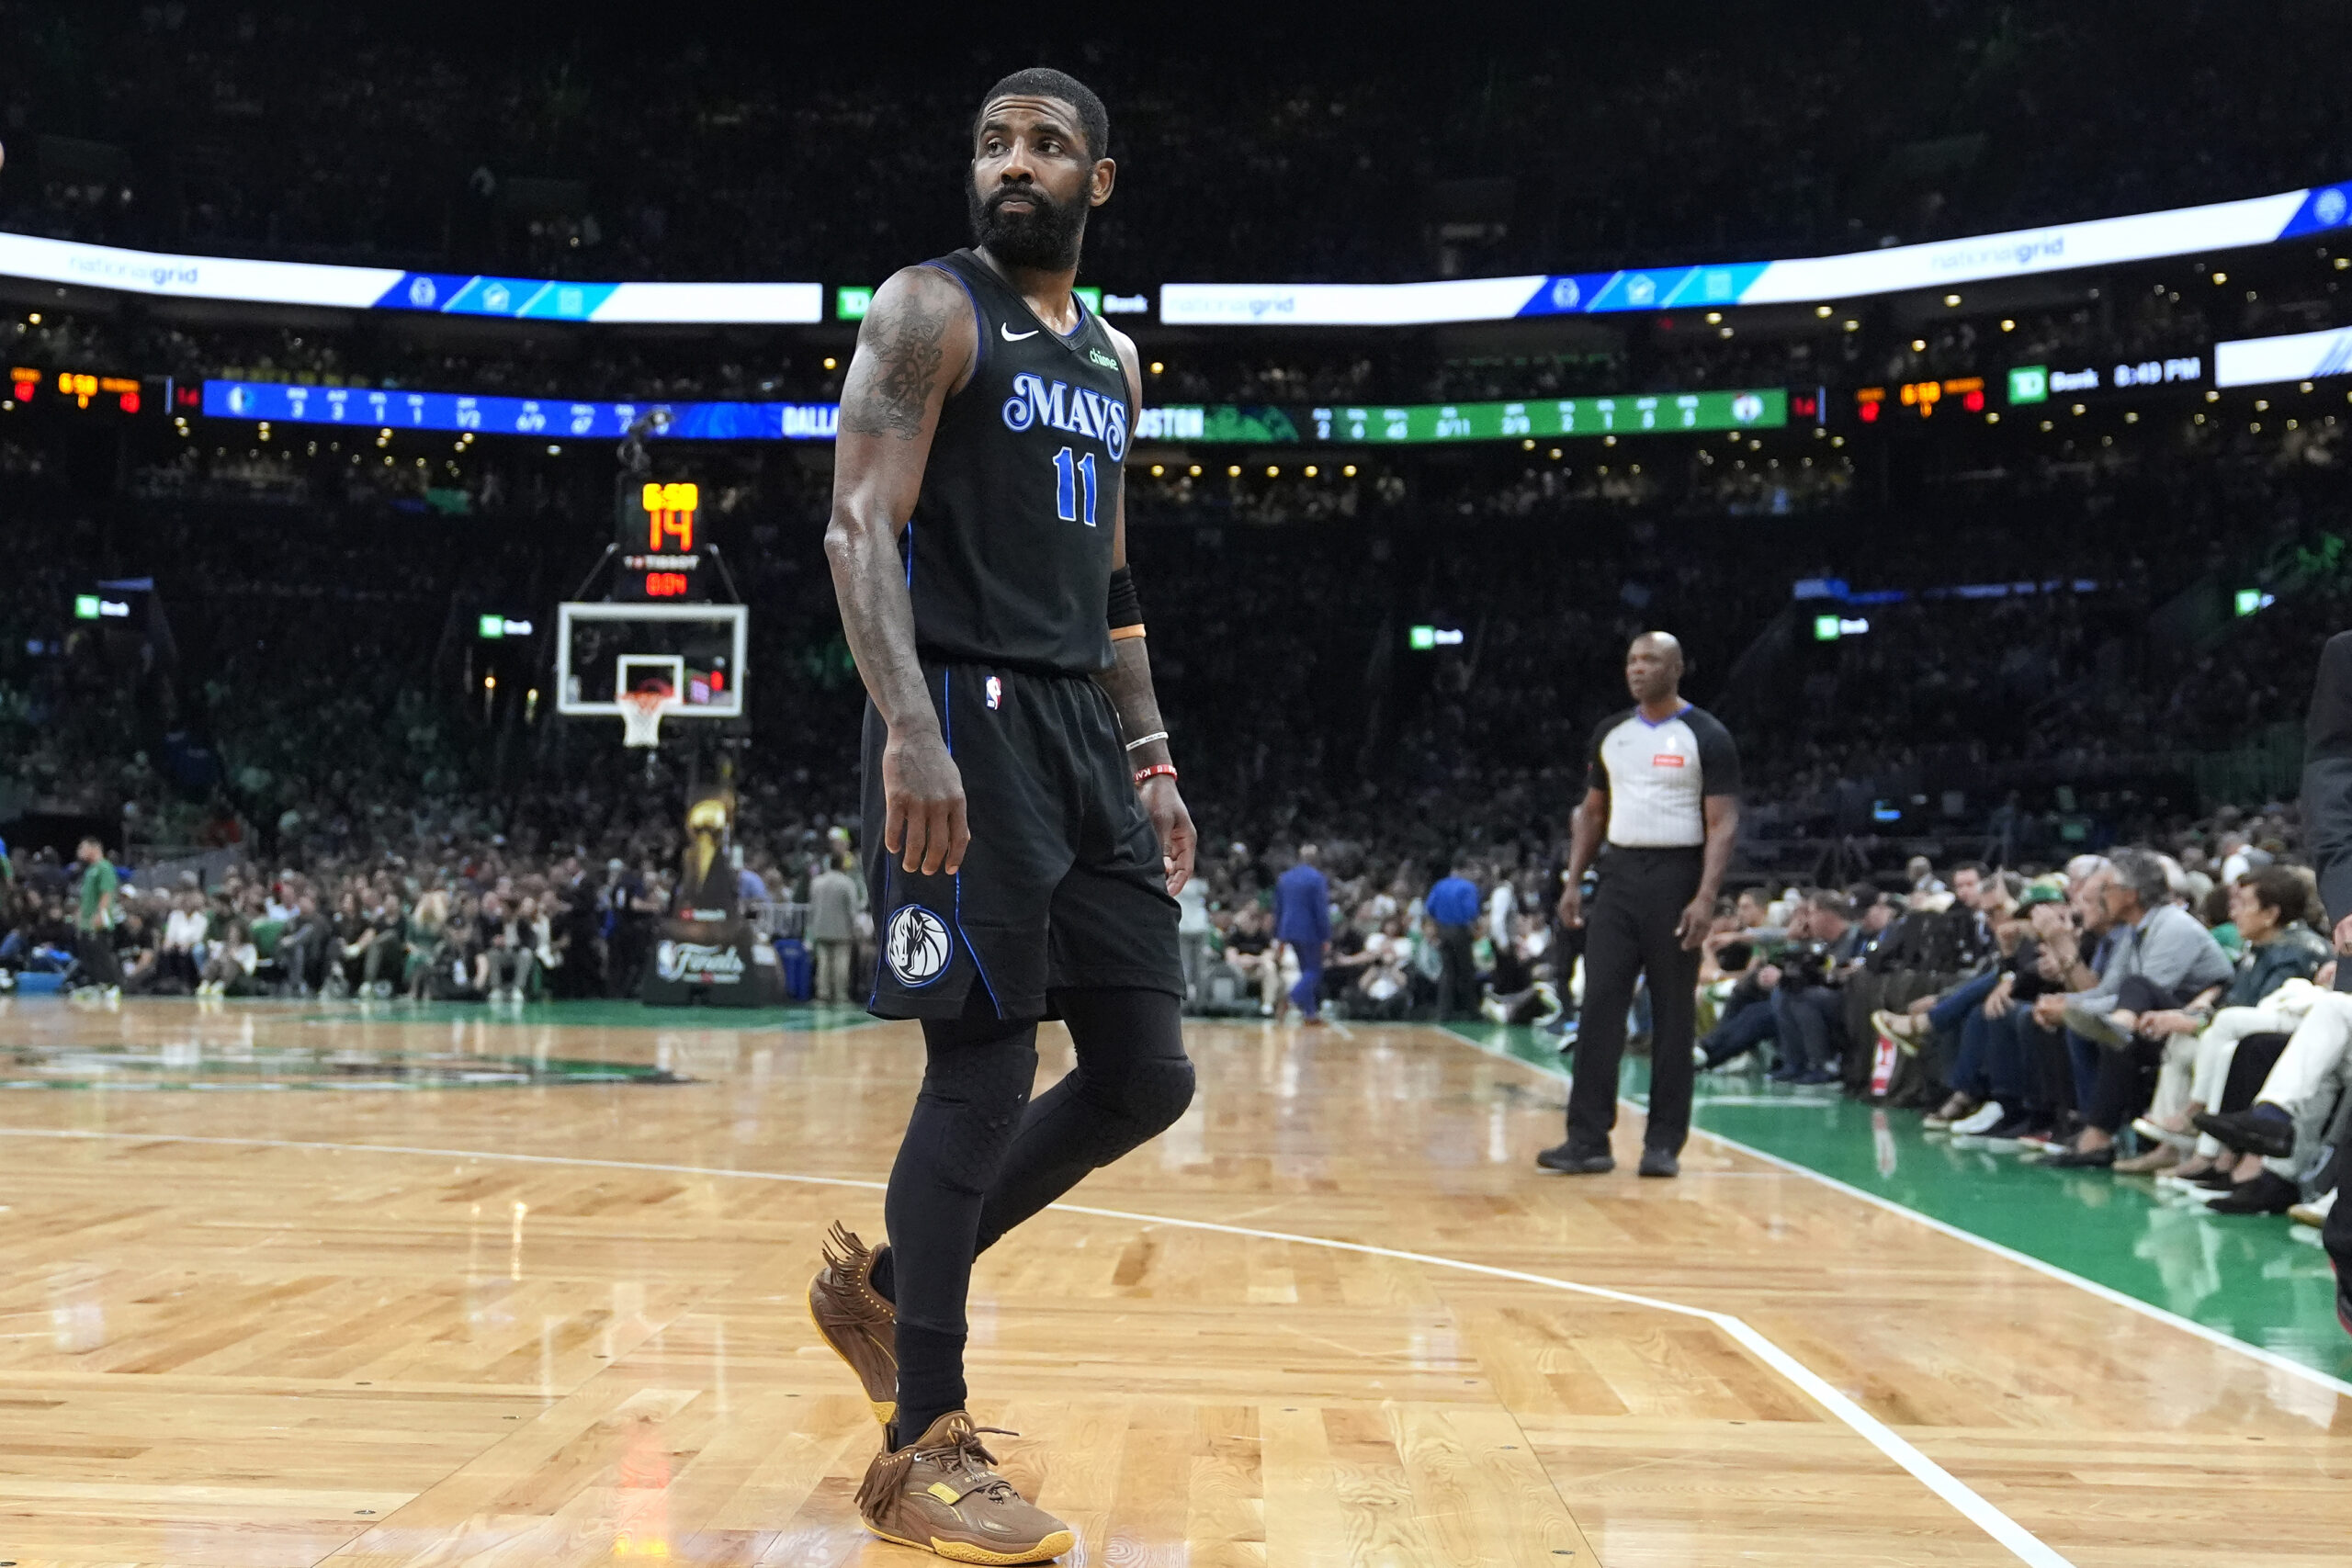 Kyrie Irving Dallas Mavericks vs Boston Celtics NBA Finals